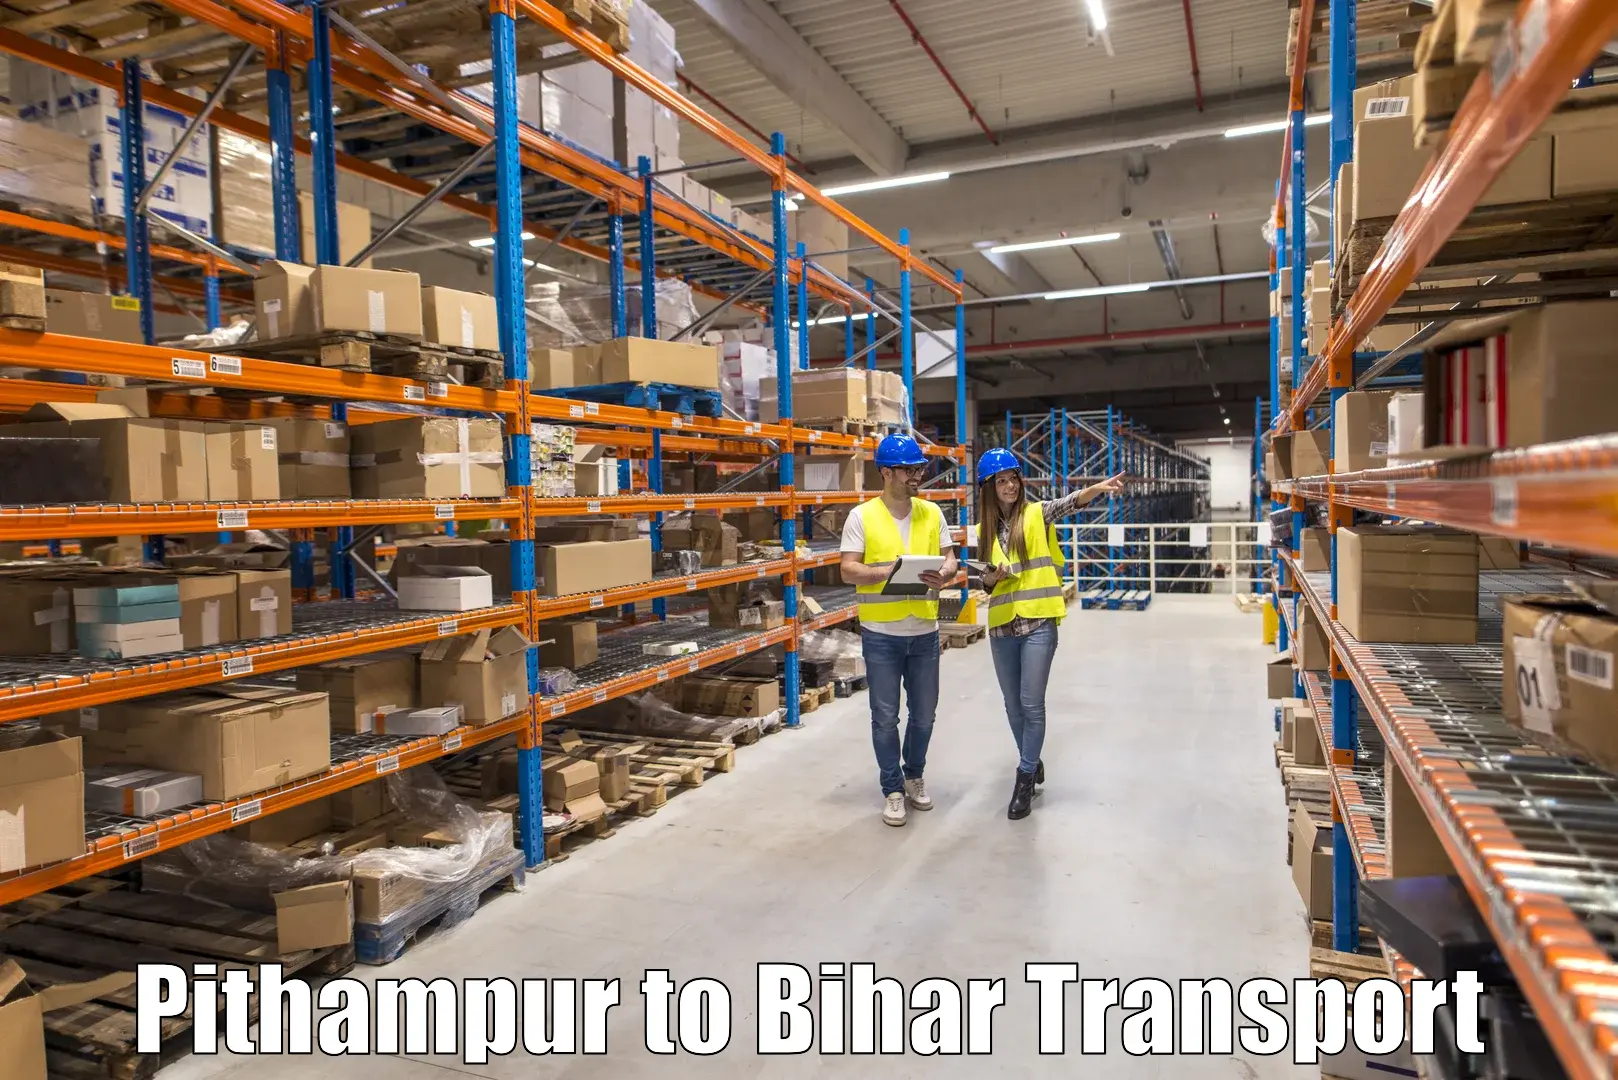 Shipping partner Pithampur to Maheshkhunt